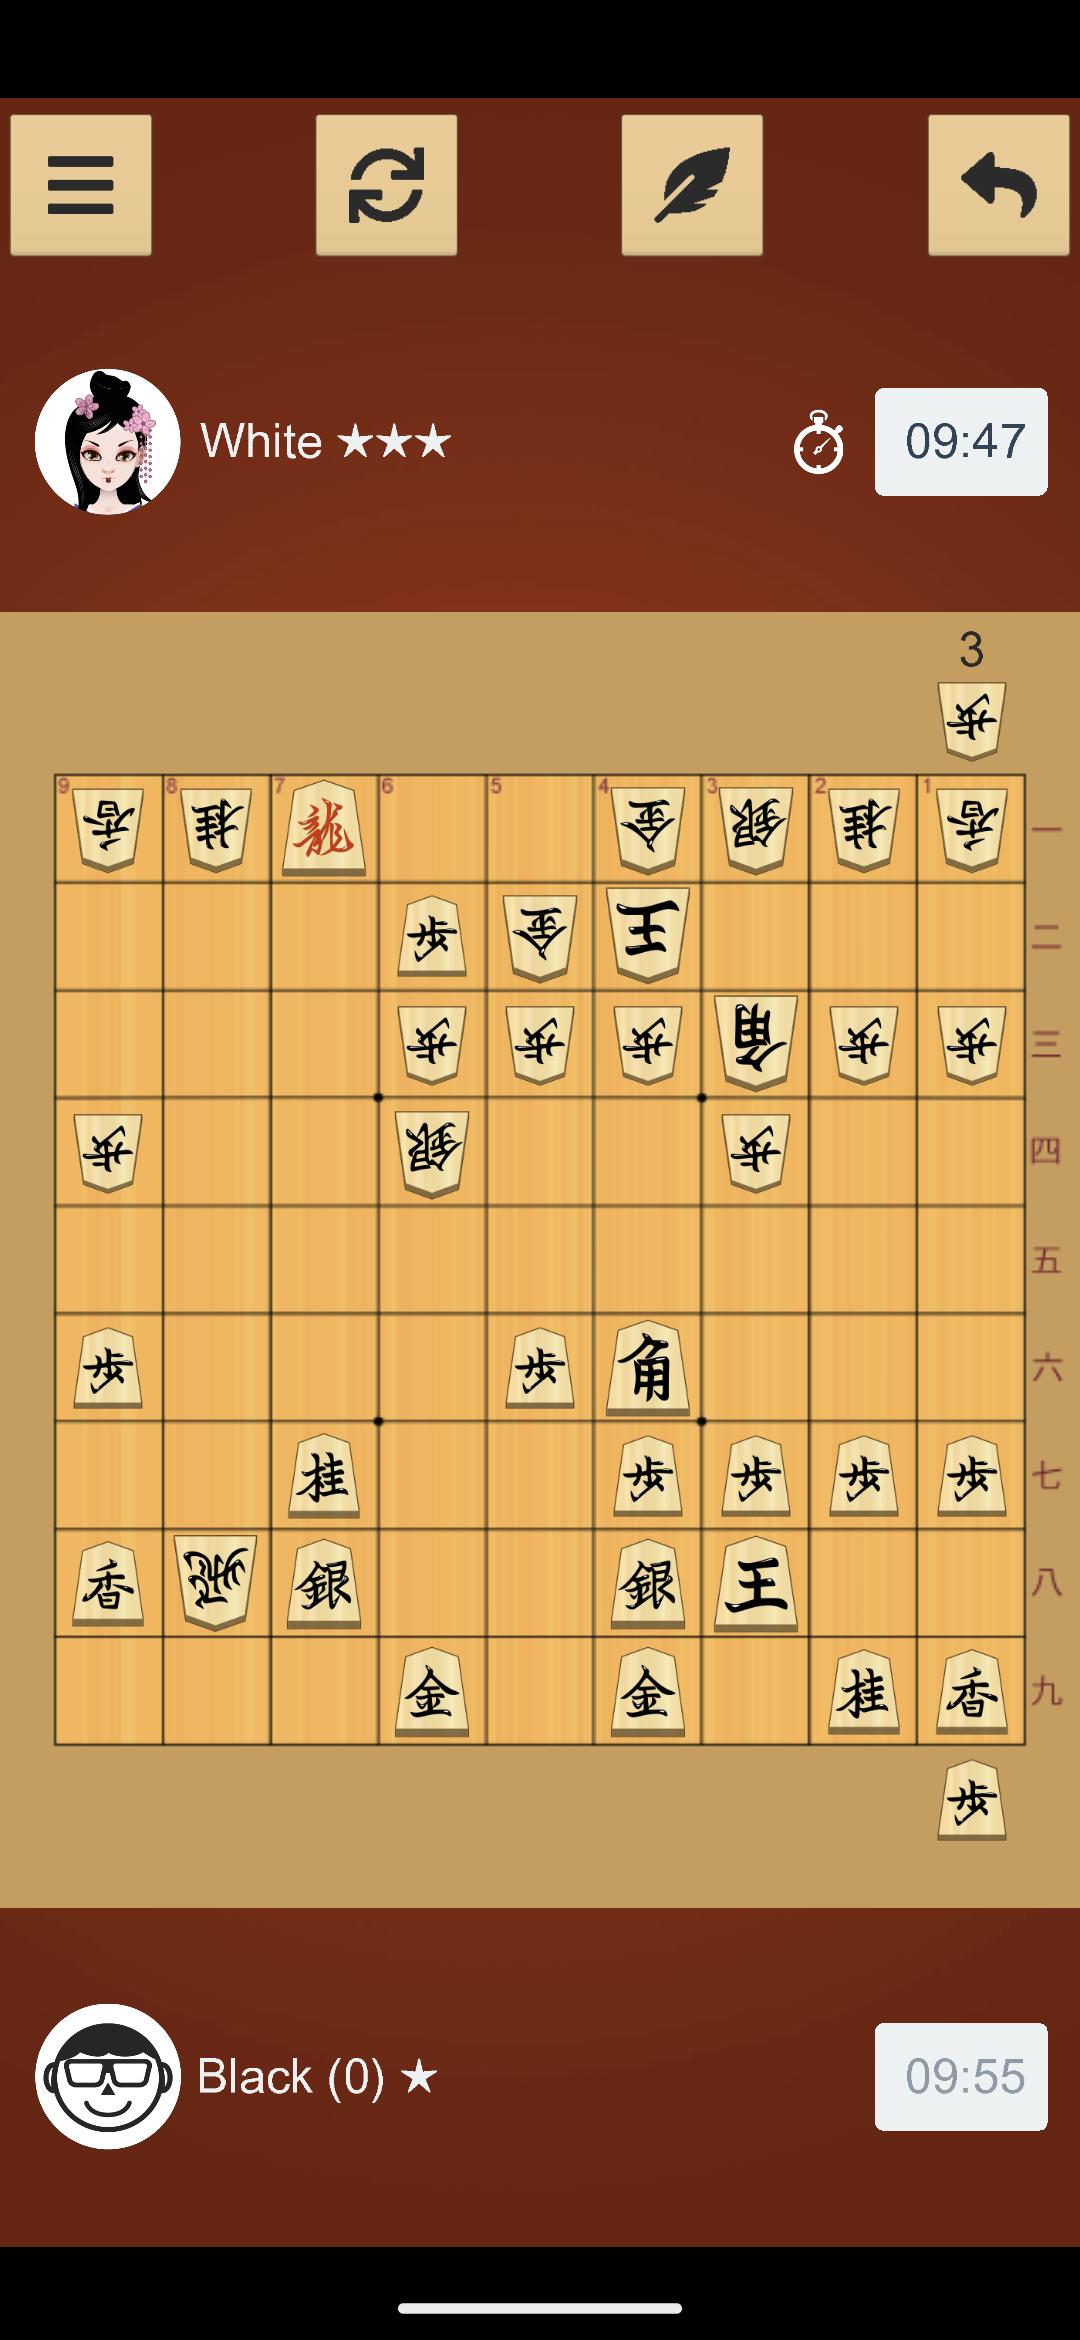 Bạn đang tìm kiếm một ứng dụng cờ shogi để giải trí và thư giãn trong những lúc rảnh rỗi? APK Cờ Shogi cho Android là một sự lựa chọn tuyệt vời dành cho bạn. Tải ứng dụng ngay hôm nay và tận hưởng giây phút thoải mái và thú vị trong trò chơi cờ shogi!